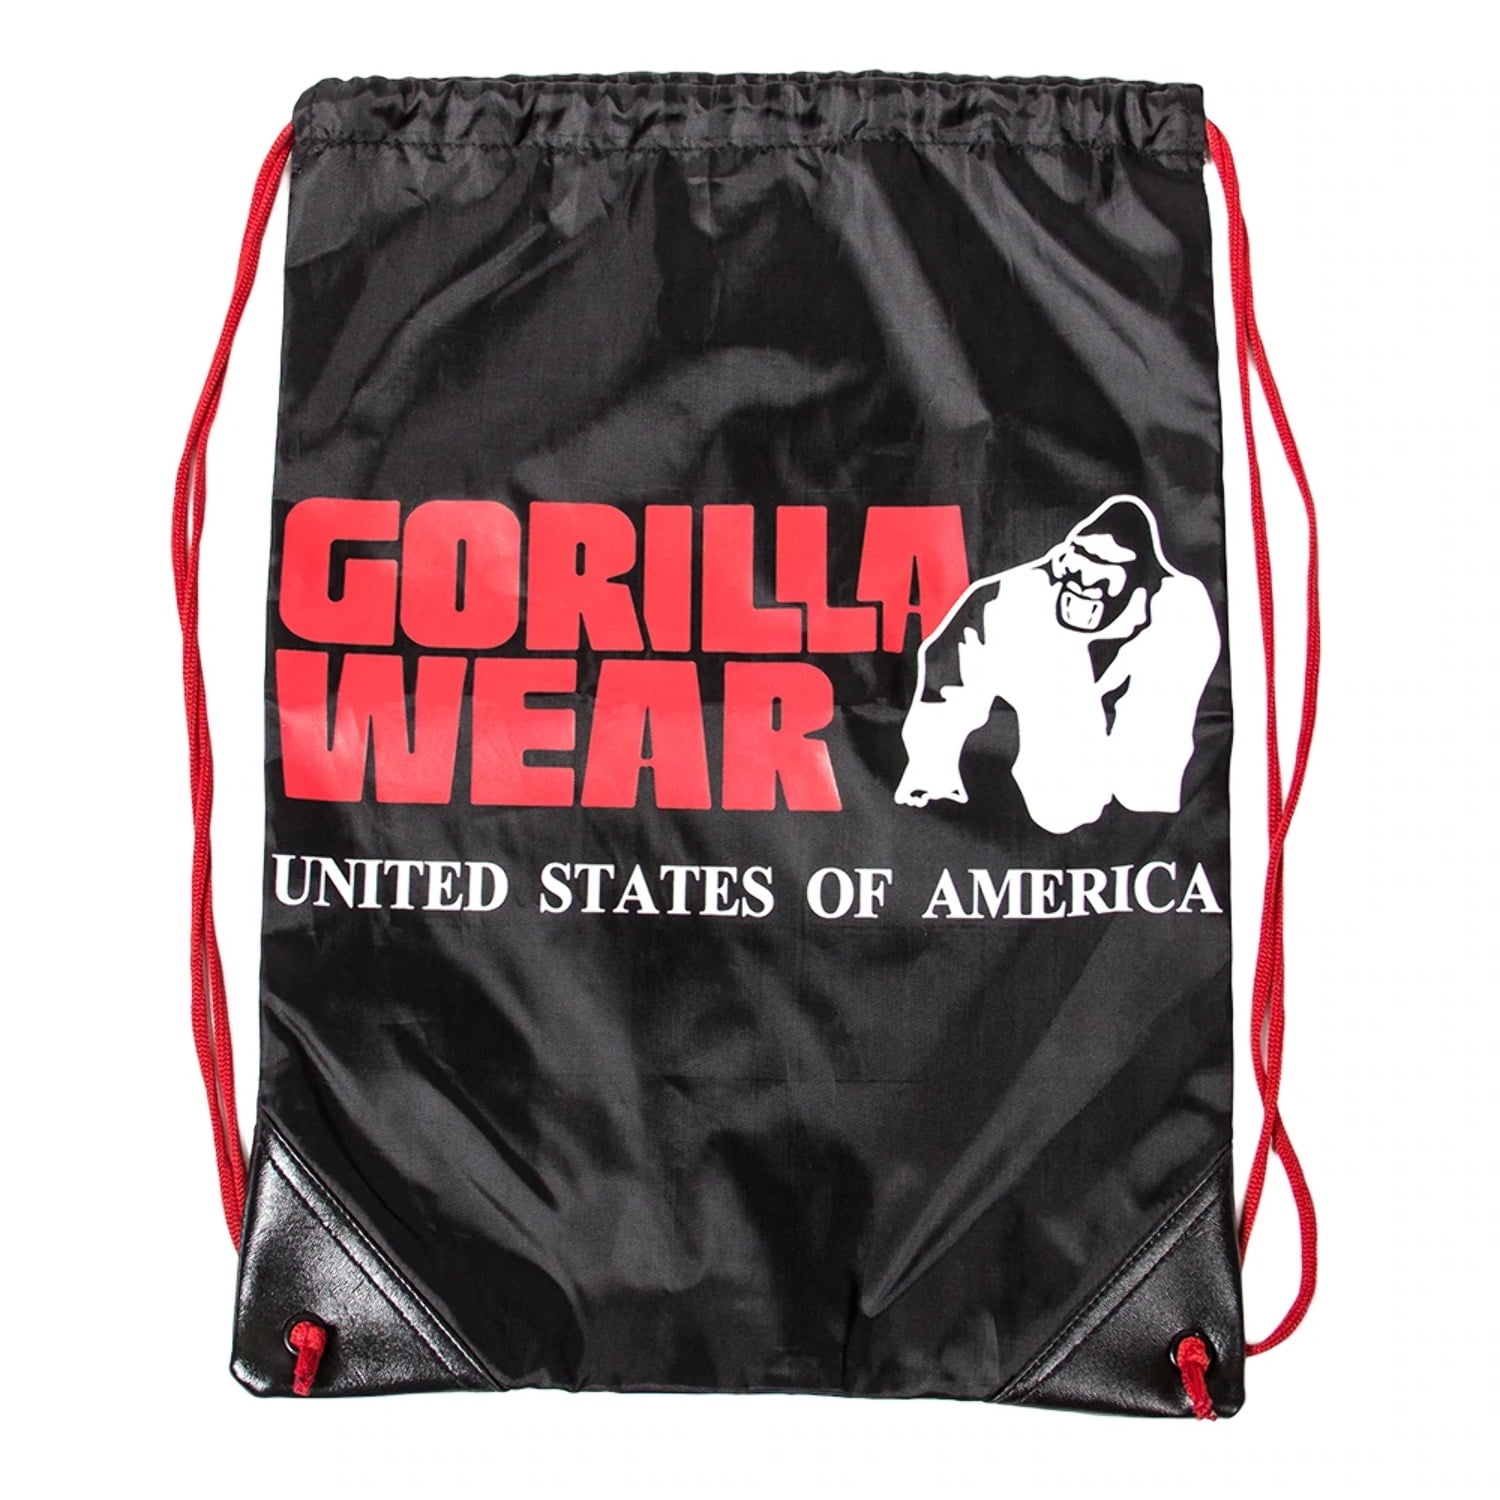 Gorilla Wear Drawstring Bag Black/Red 